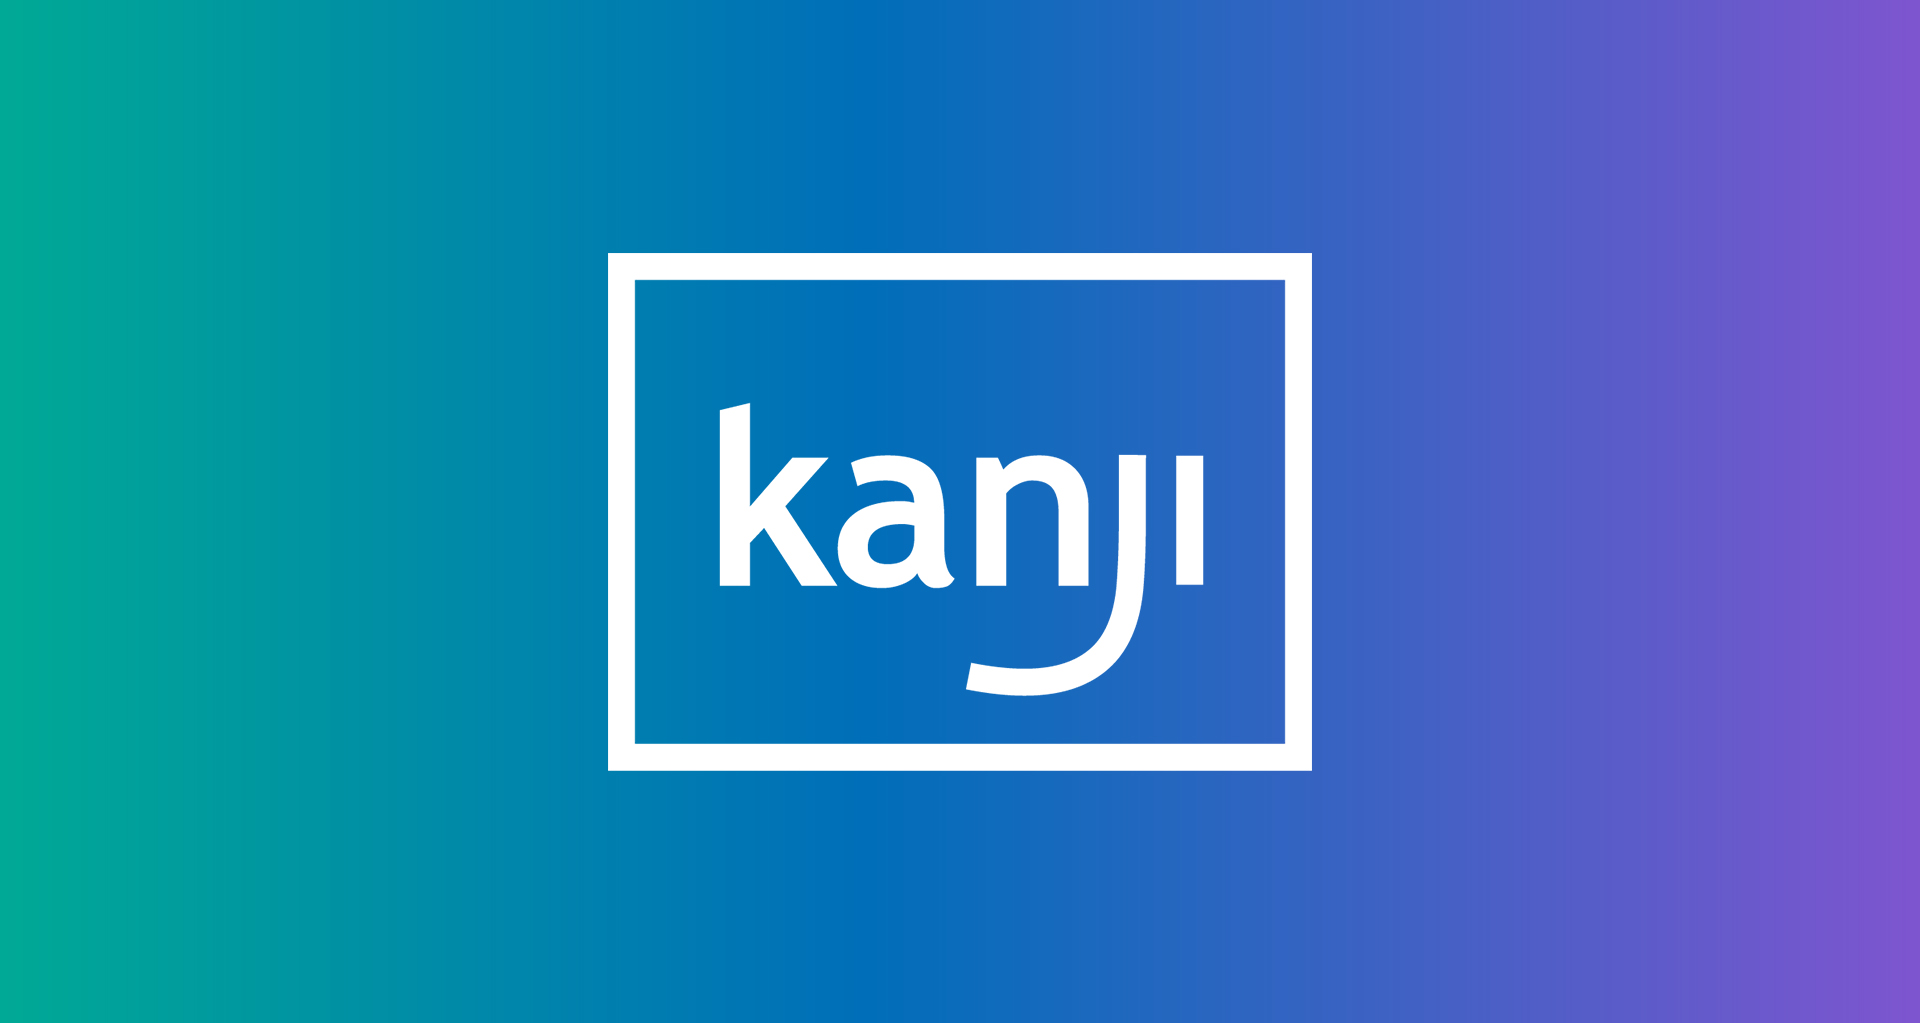 
Kanji Logotype
